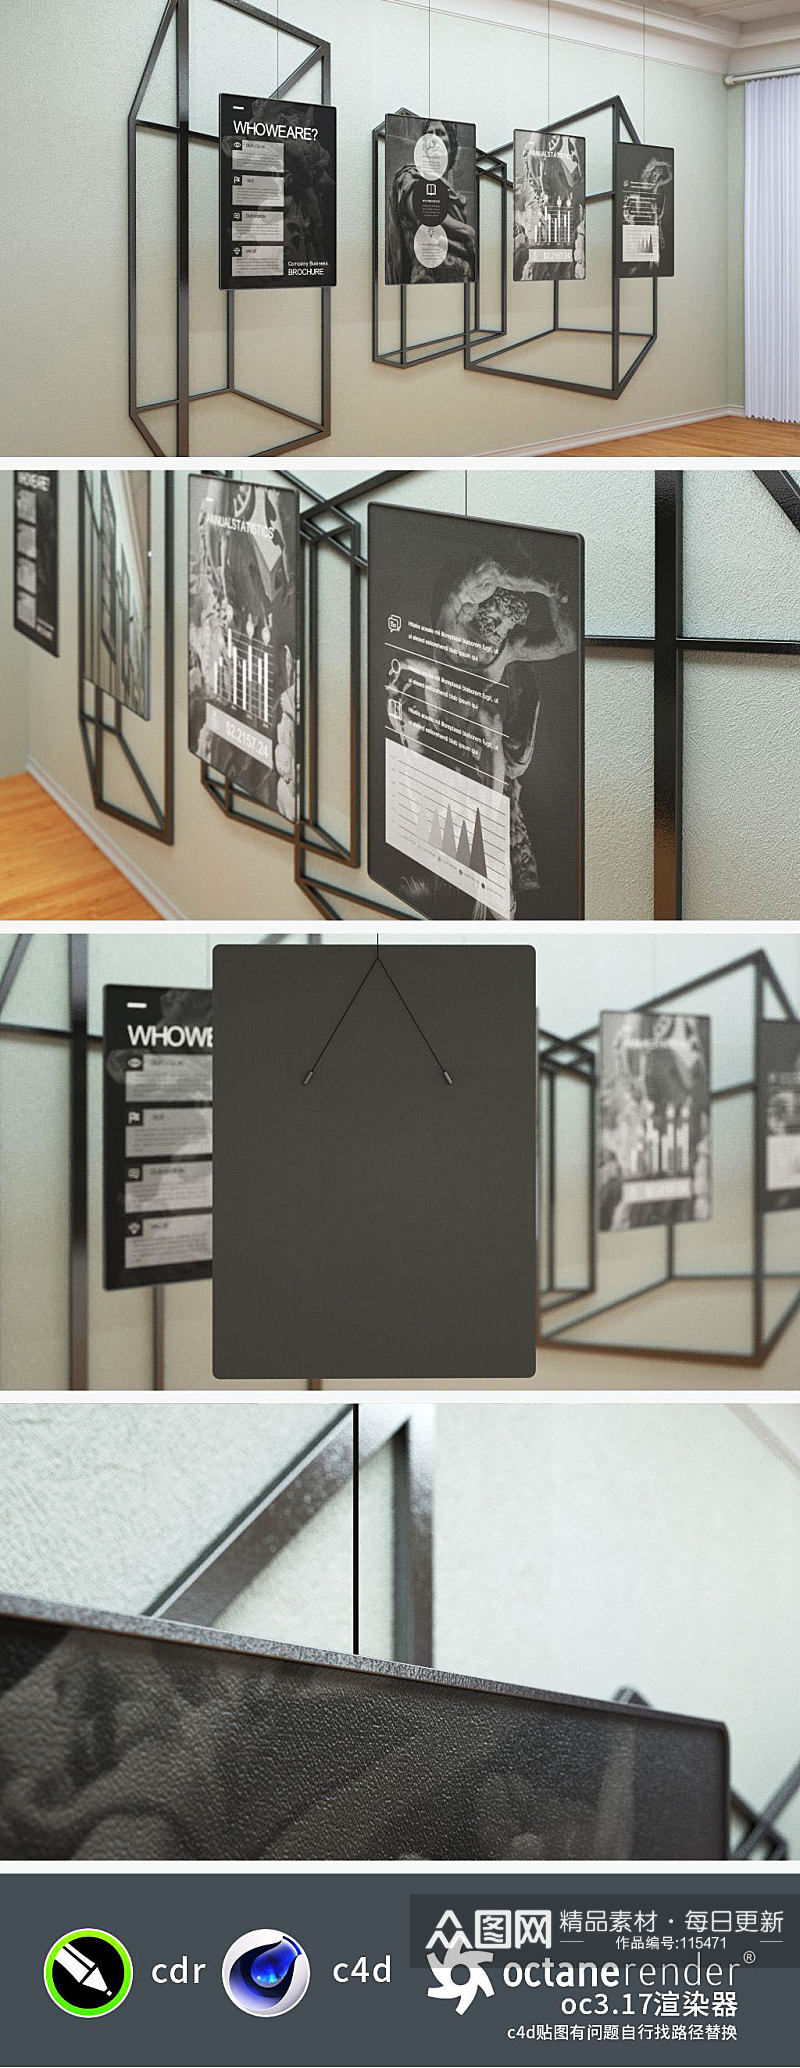 黑色质感创新式企业文化墙设计效果图素材